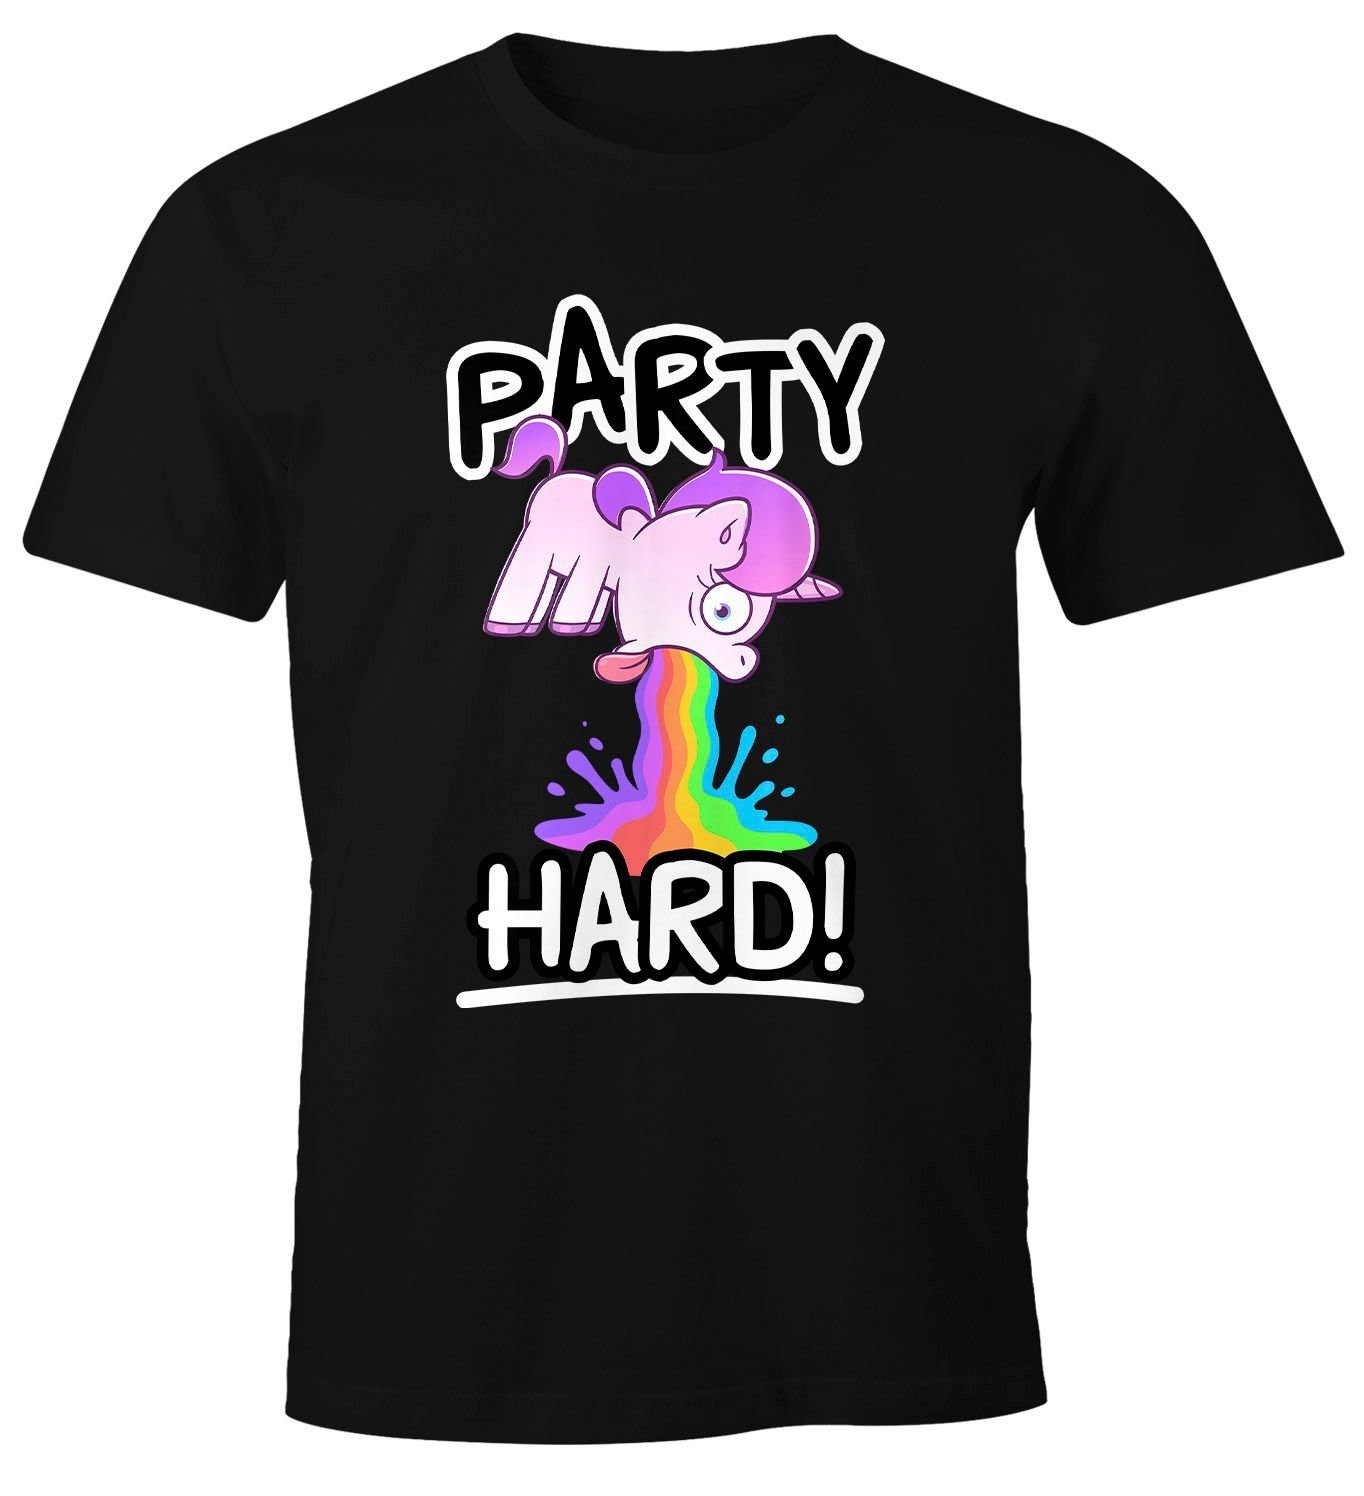 Hard Einhorn Spruch mit lustig T-Shirt Moonworks® Saufshirt kotzendes Comic-Stil Print-Shirt MoonWorks Herren Print Party Fun-Shirt